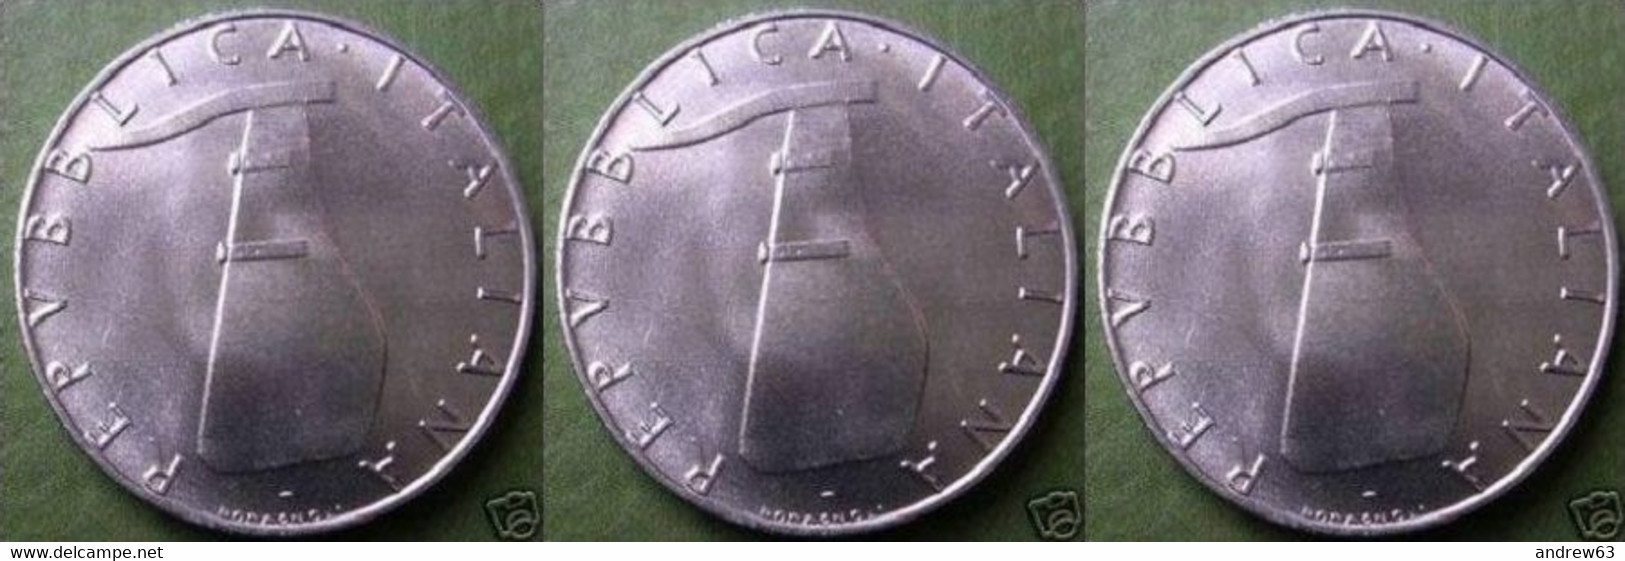 ITALIA - Lire 5 1975 - FDC/Unc Da Rotolino/from Roll 3 Monete/3 Coins - 5 Liras